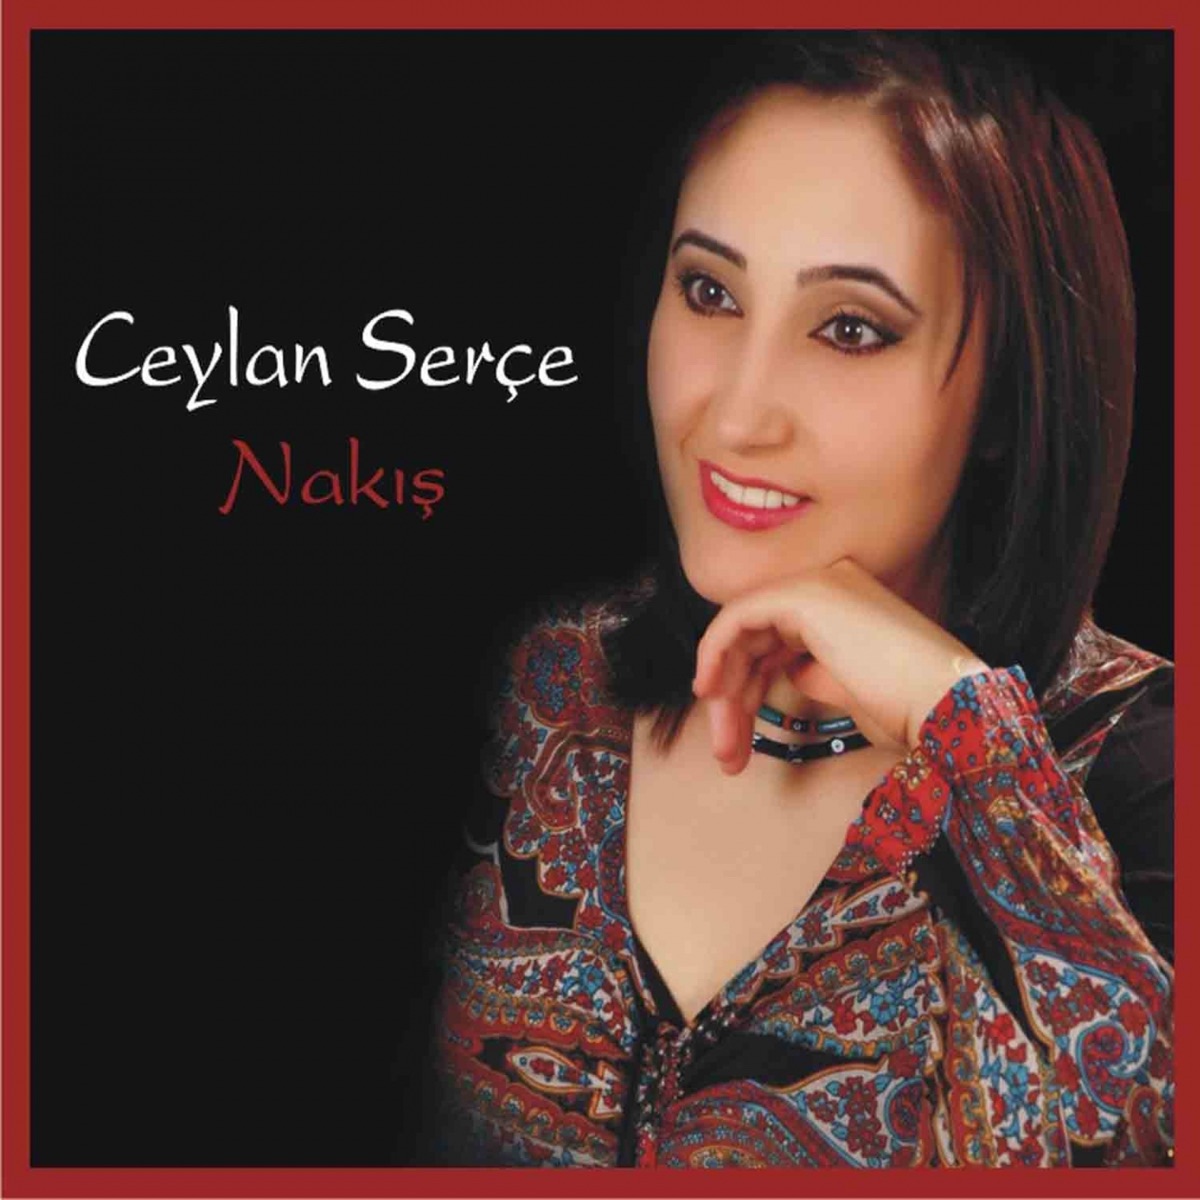 Sen Bilmedin Hallarımı - Single - Album by Ceylan Serçe & Hüseyin Kağıt -  Apple Music